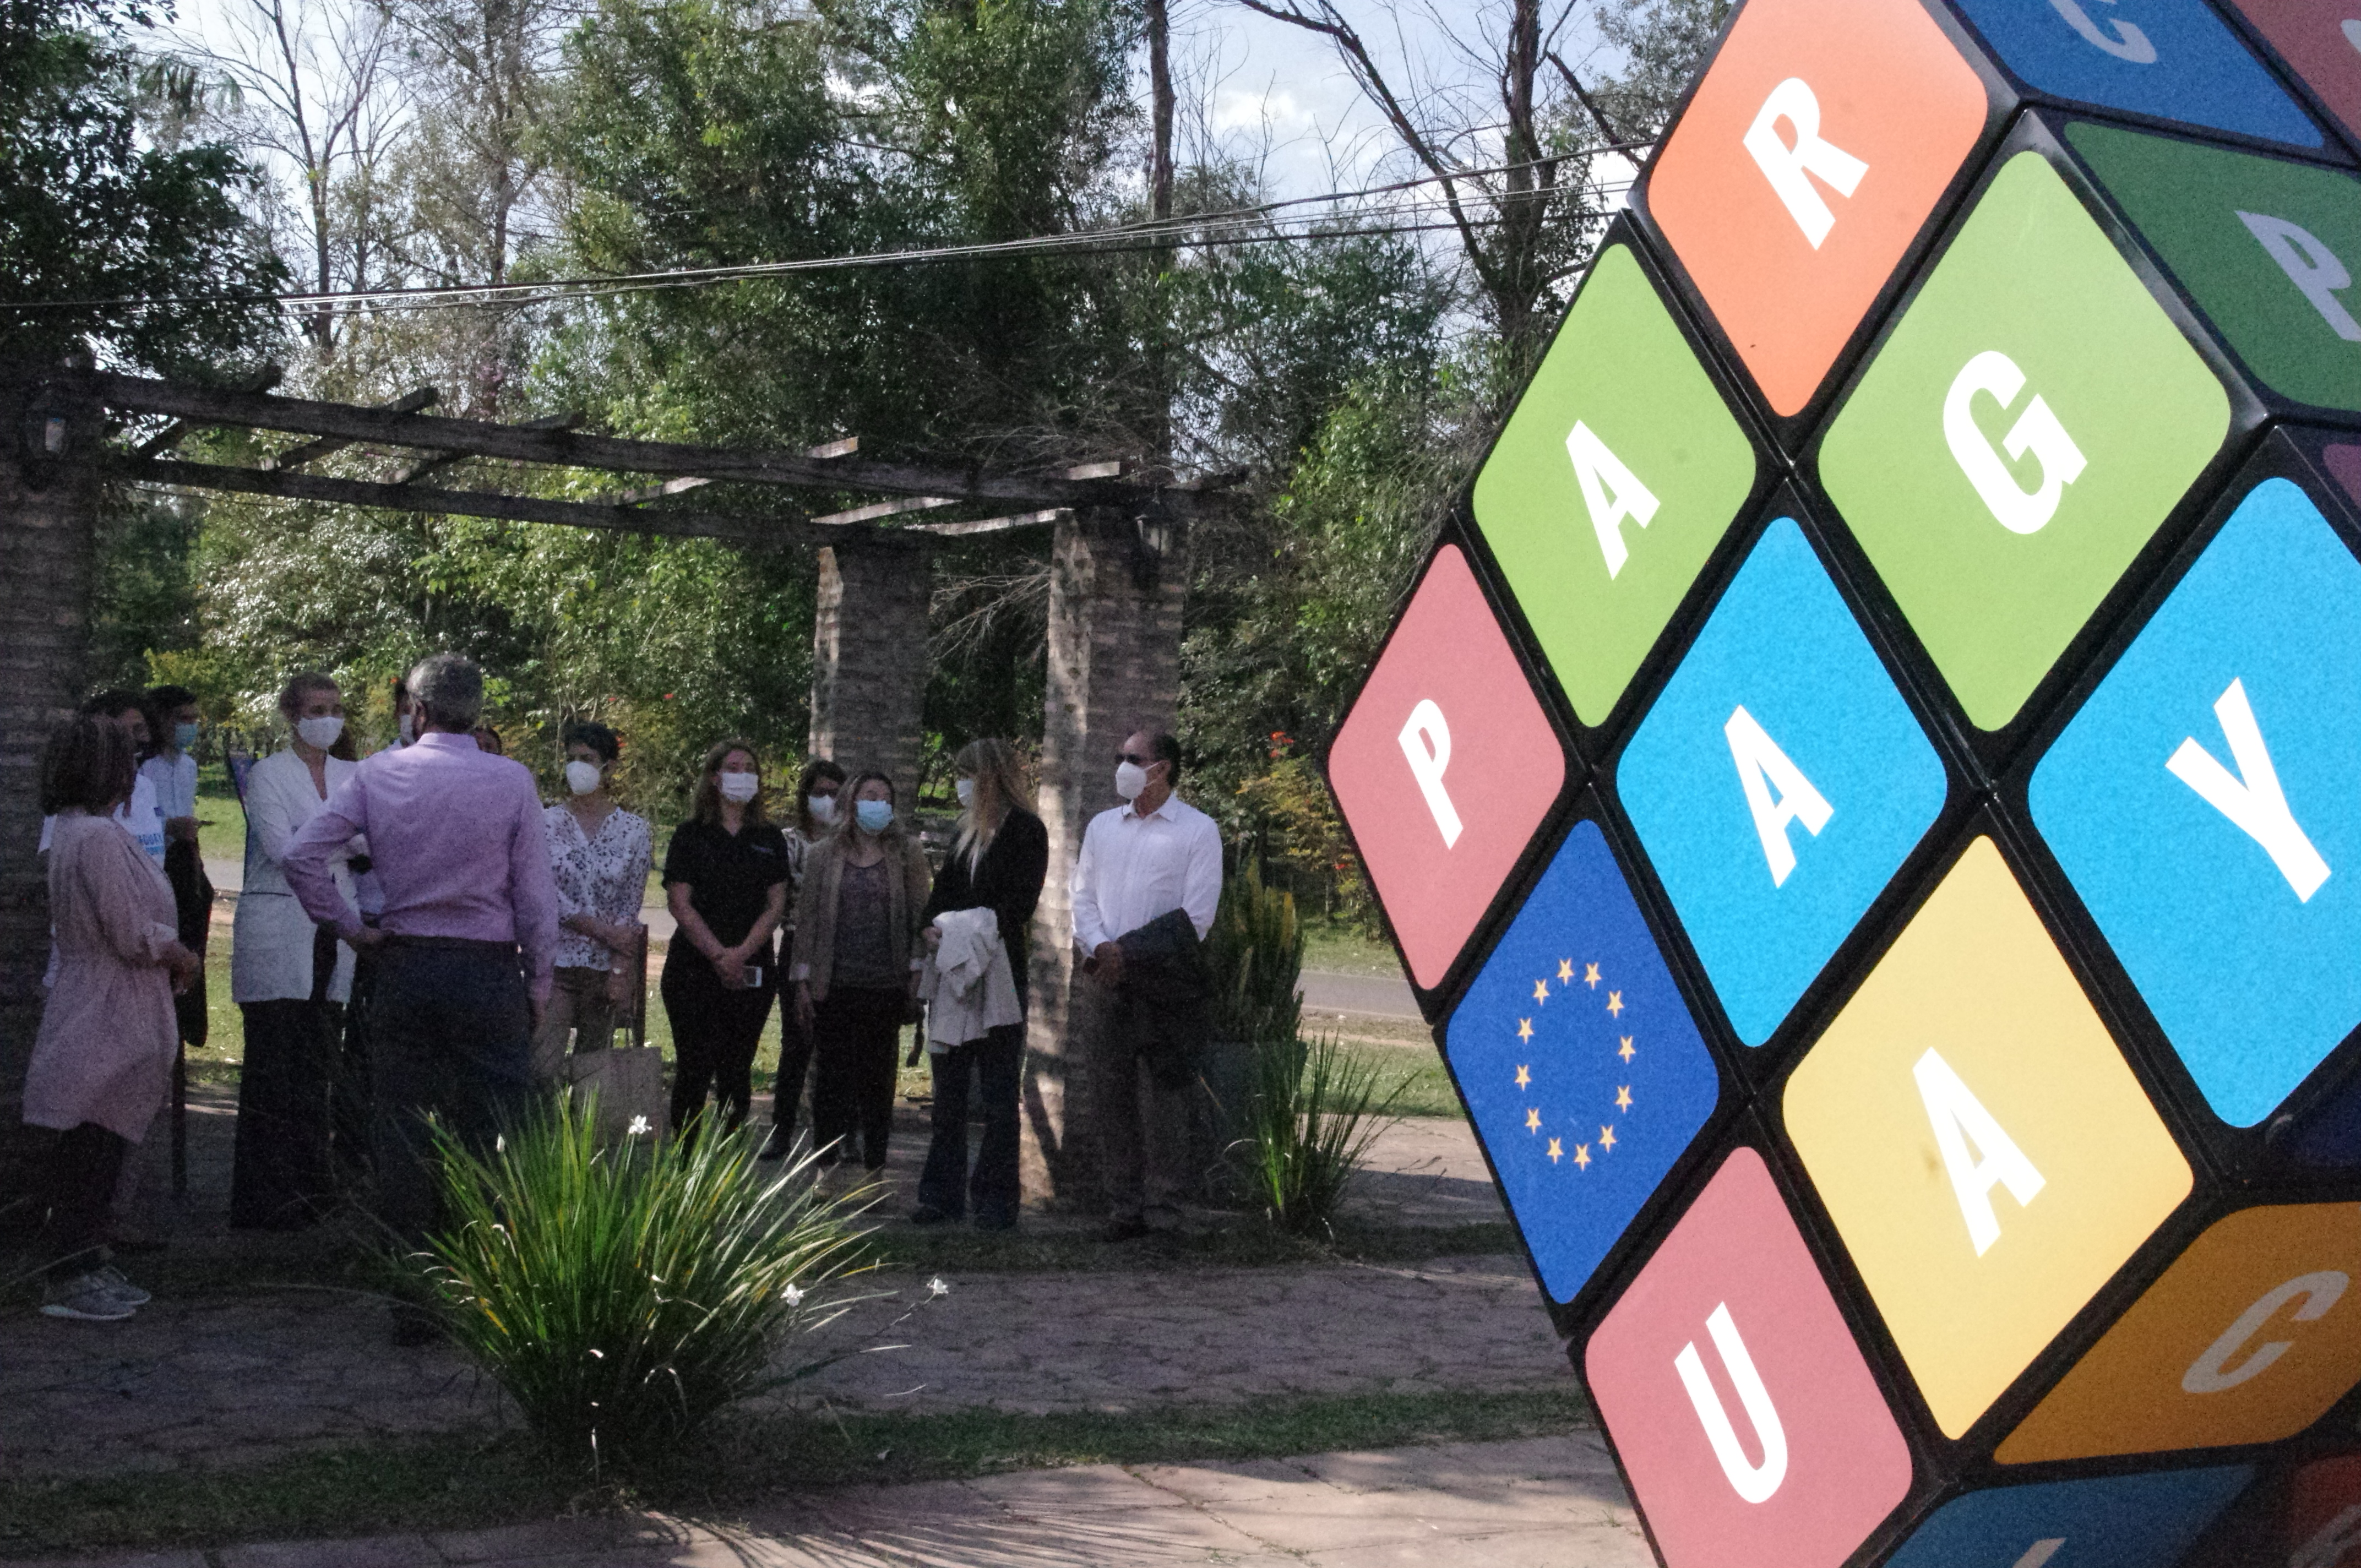 La Unión Europea en Paraguay ofreció un paseo guiado por las intervenciones urbanas expuestas en Ñu Guasu